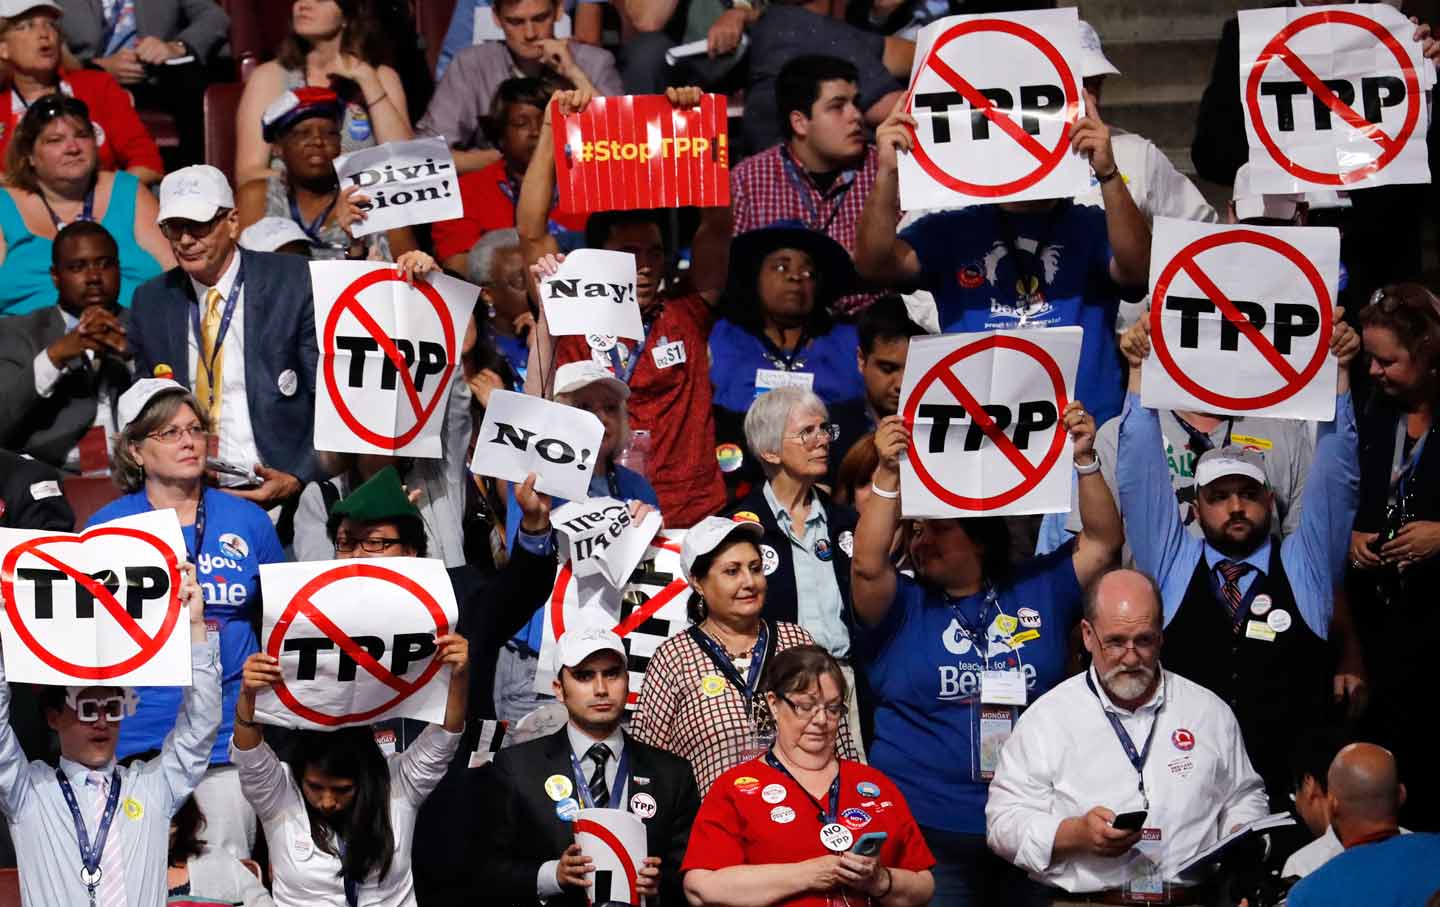 Stop TPP at DNC